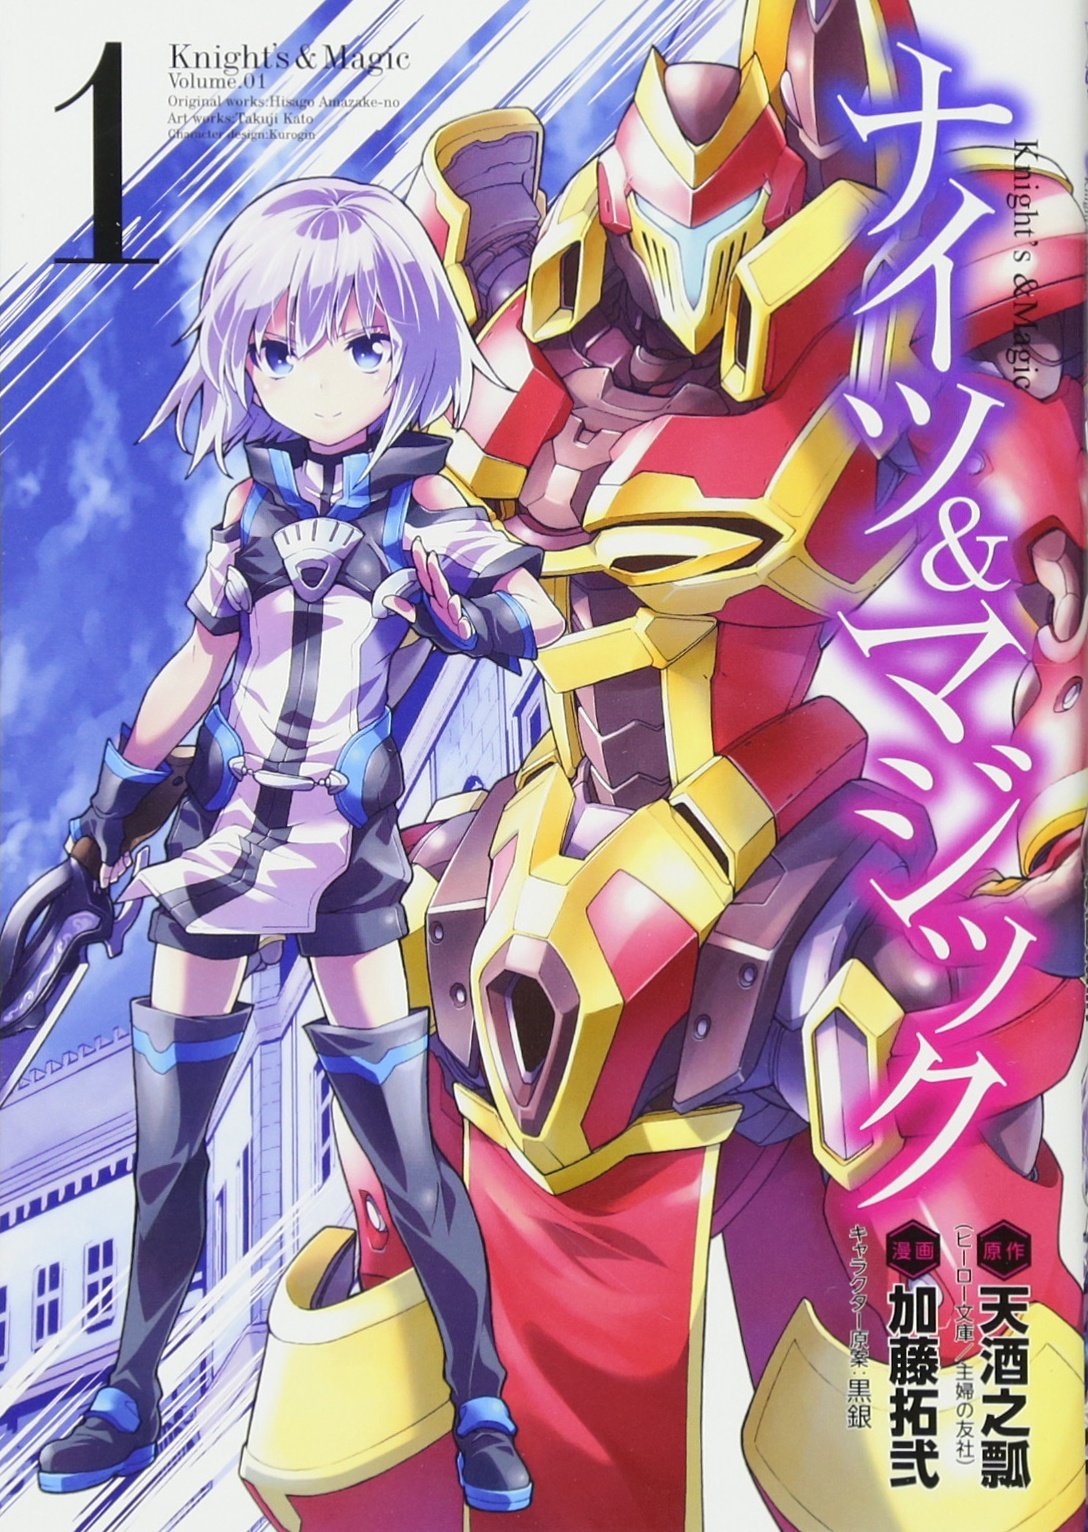 knight & magic #knightandmagic #anime #gundam #fake #isekai #overpower